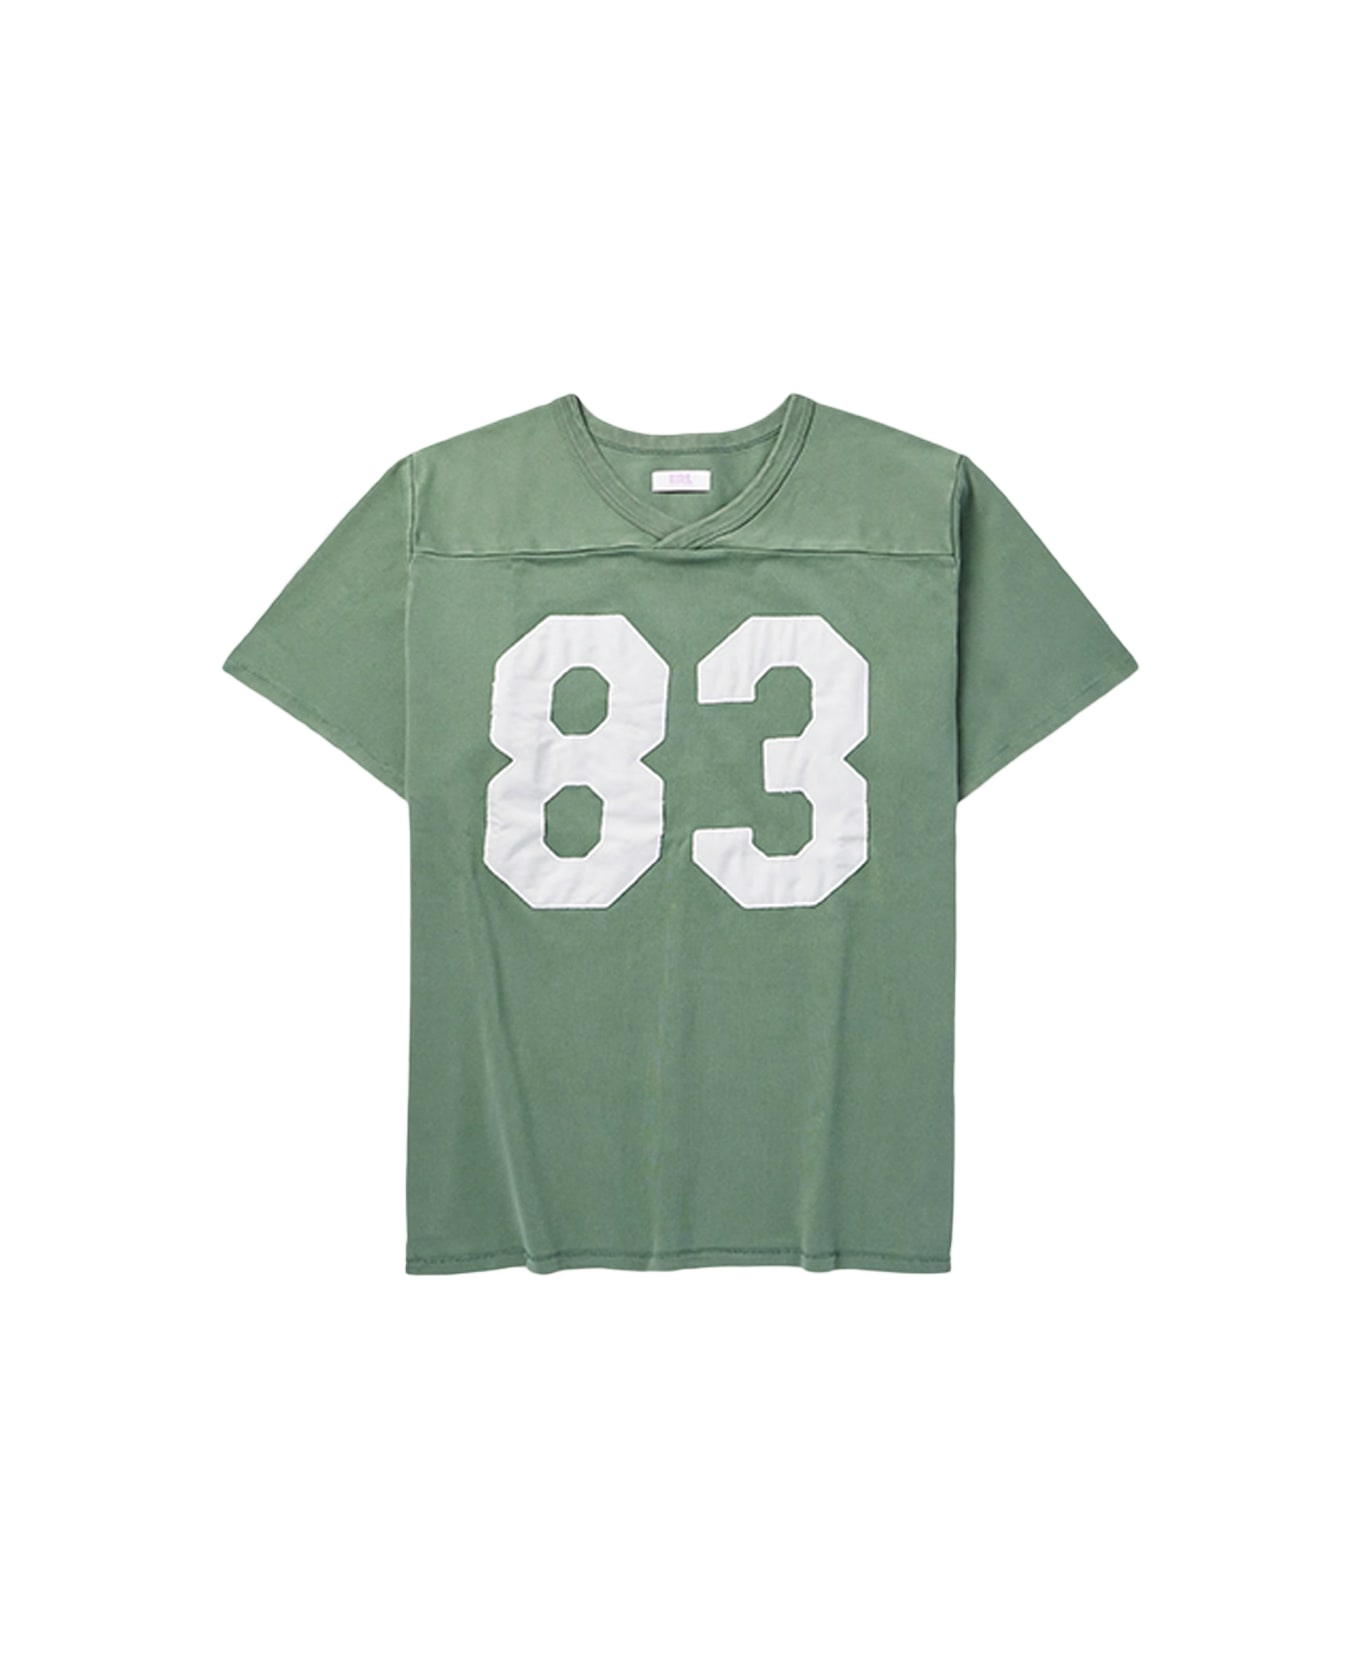 ERL Unisex Football Shirt Knit Green cotton football t-shirt - Unisex football shirt knit - Verde